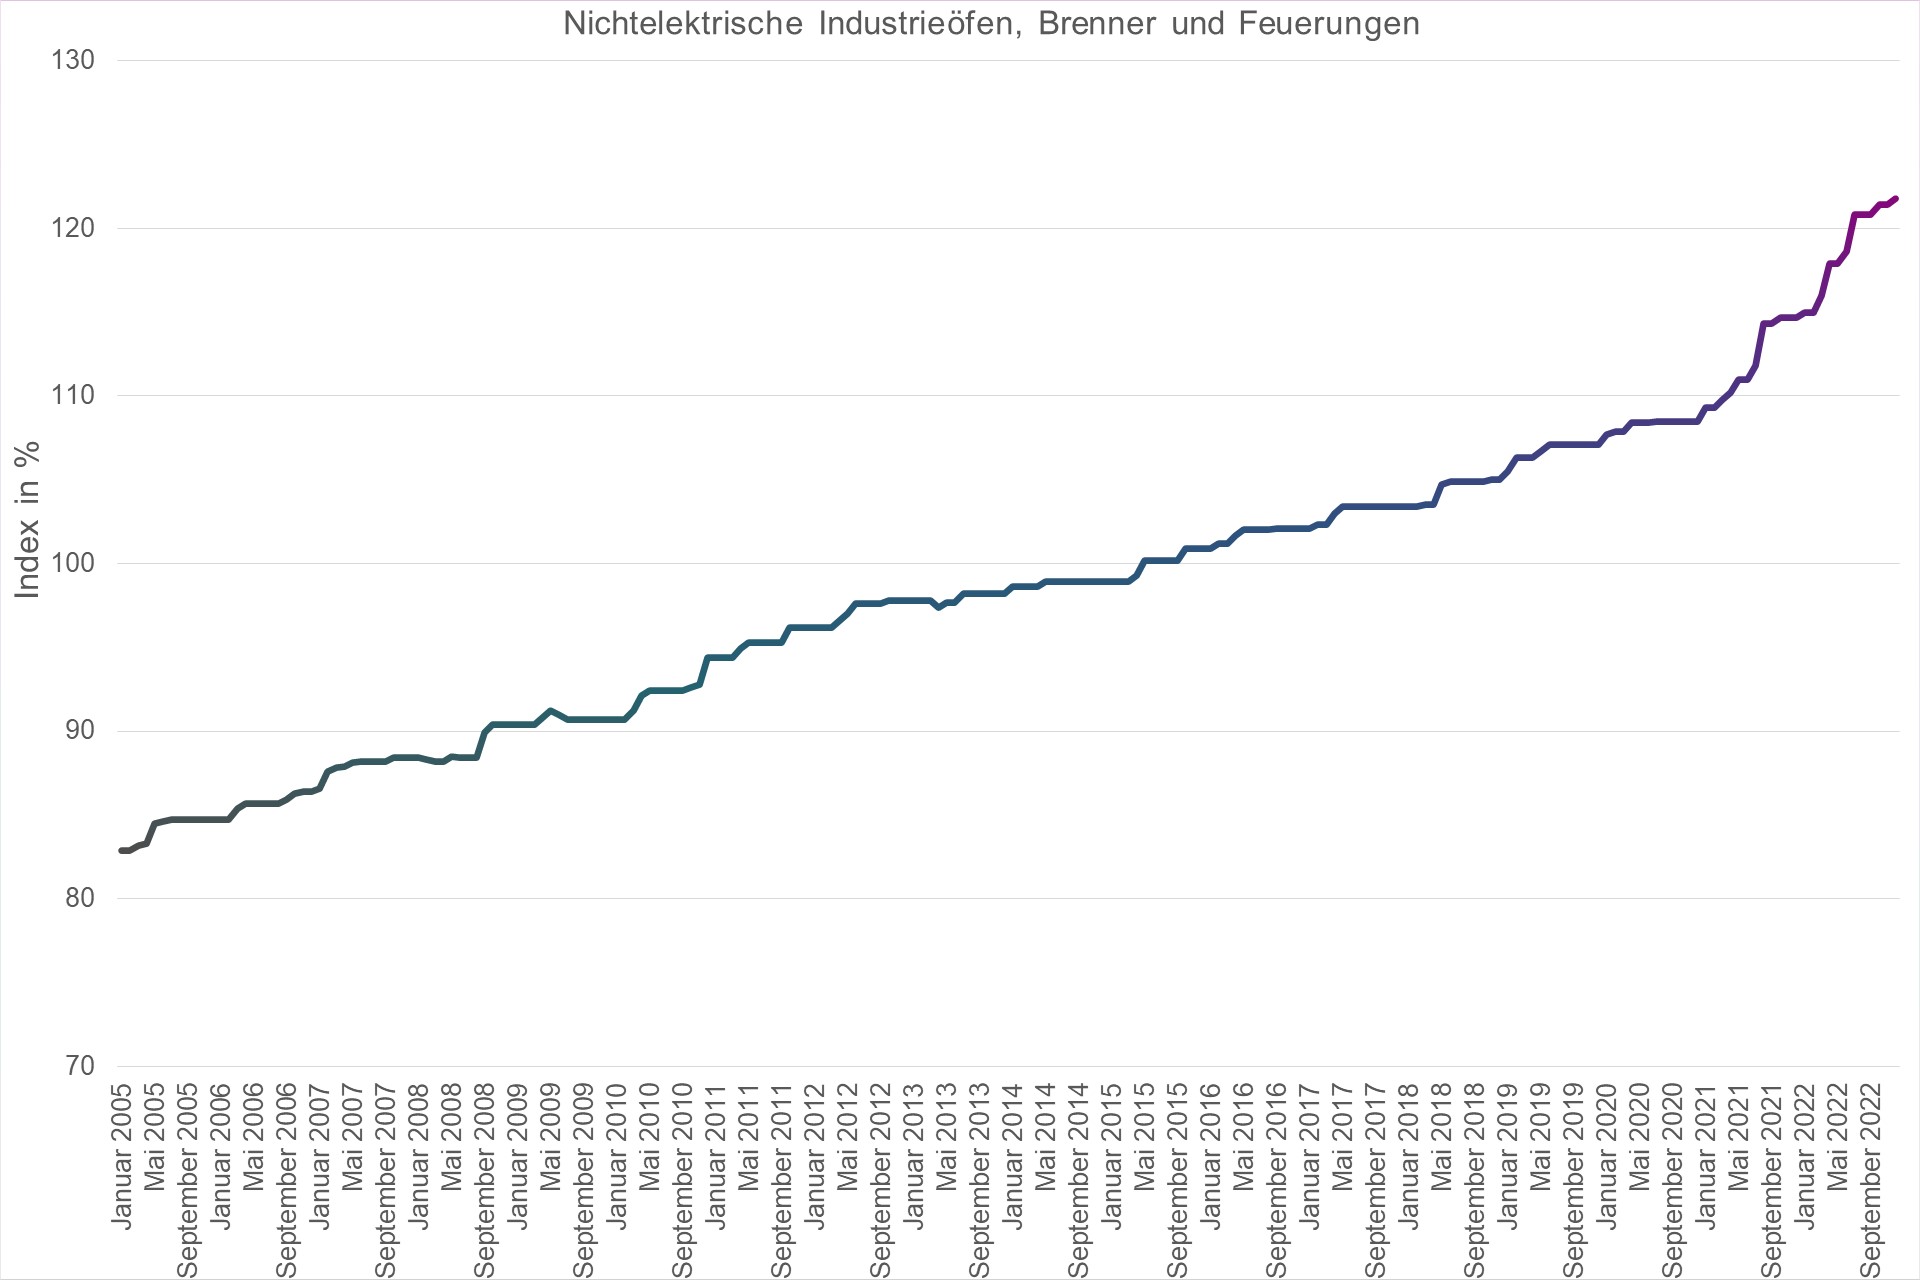 Grafik Preisindex Nichtelektrische Industrieöfen, Brenner und Feuerungen